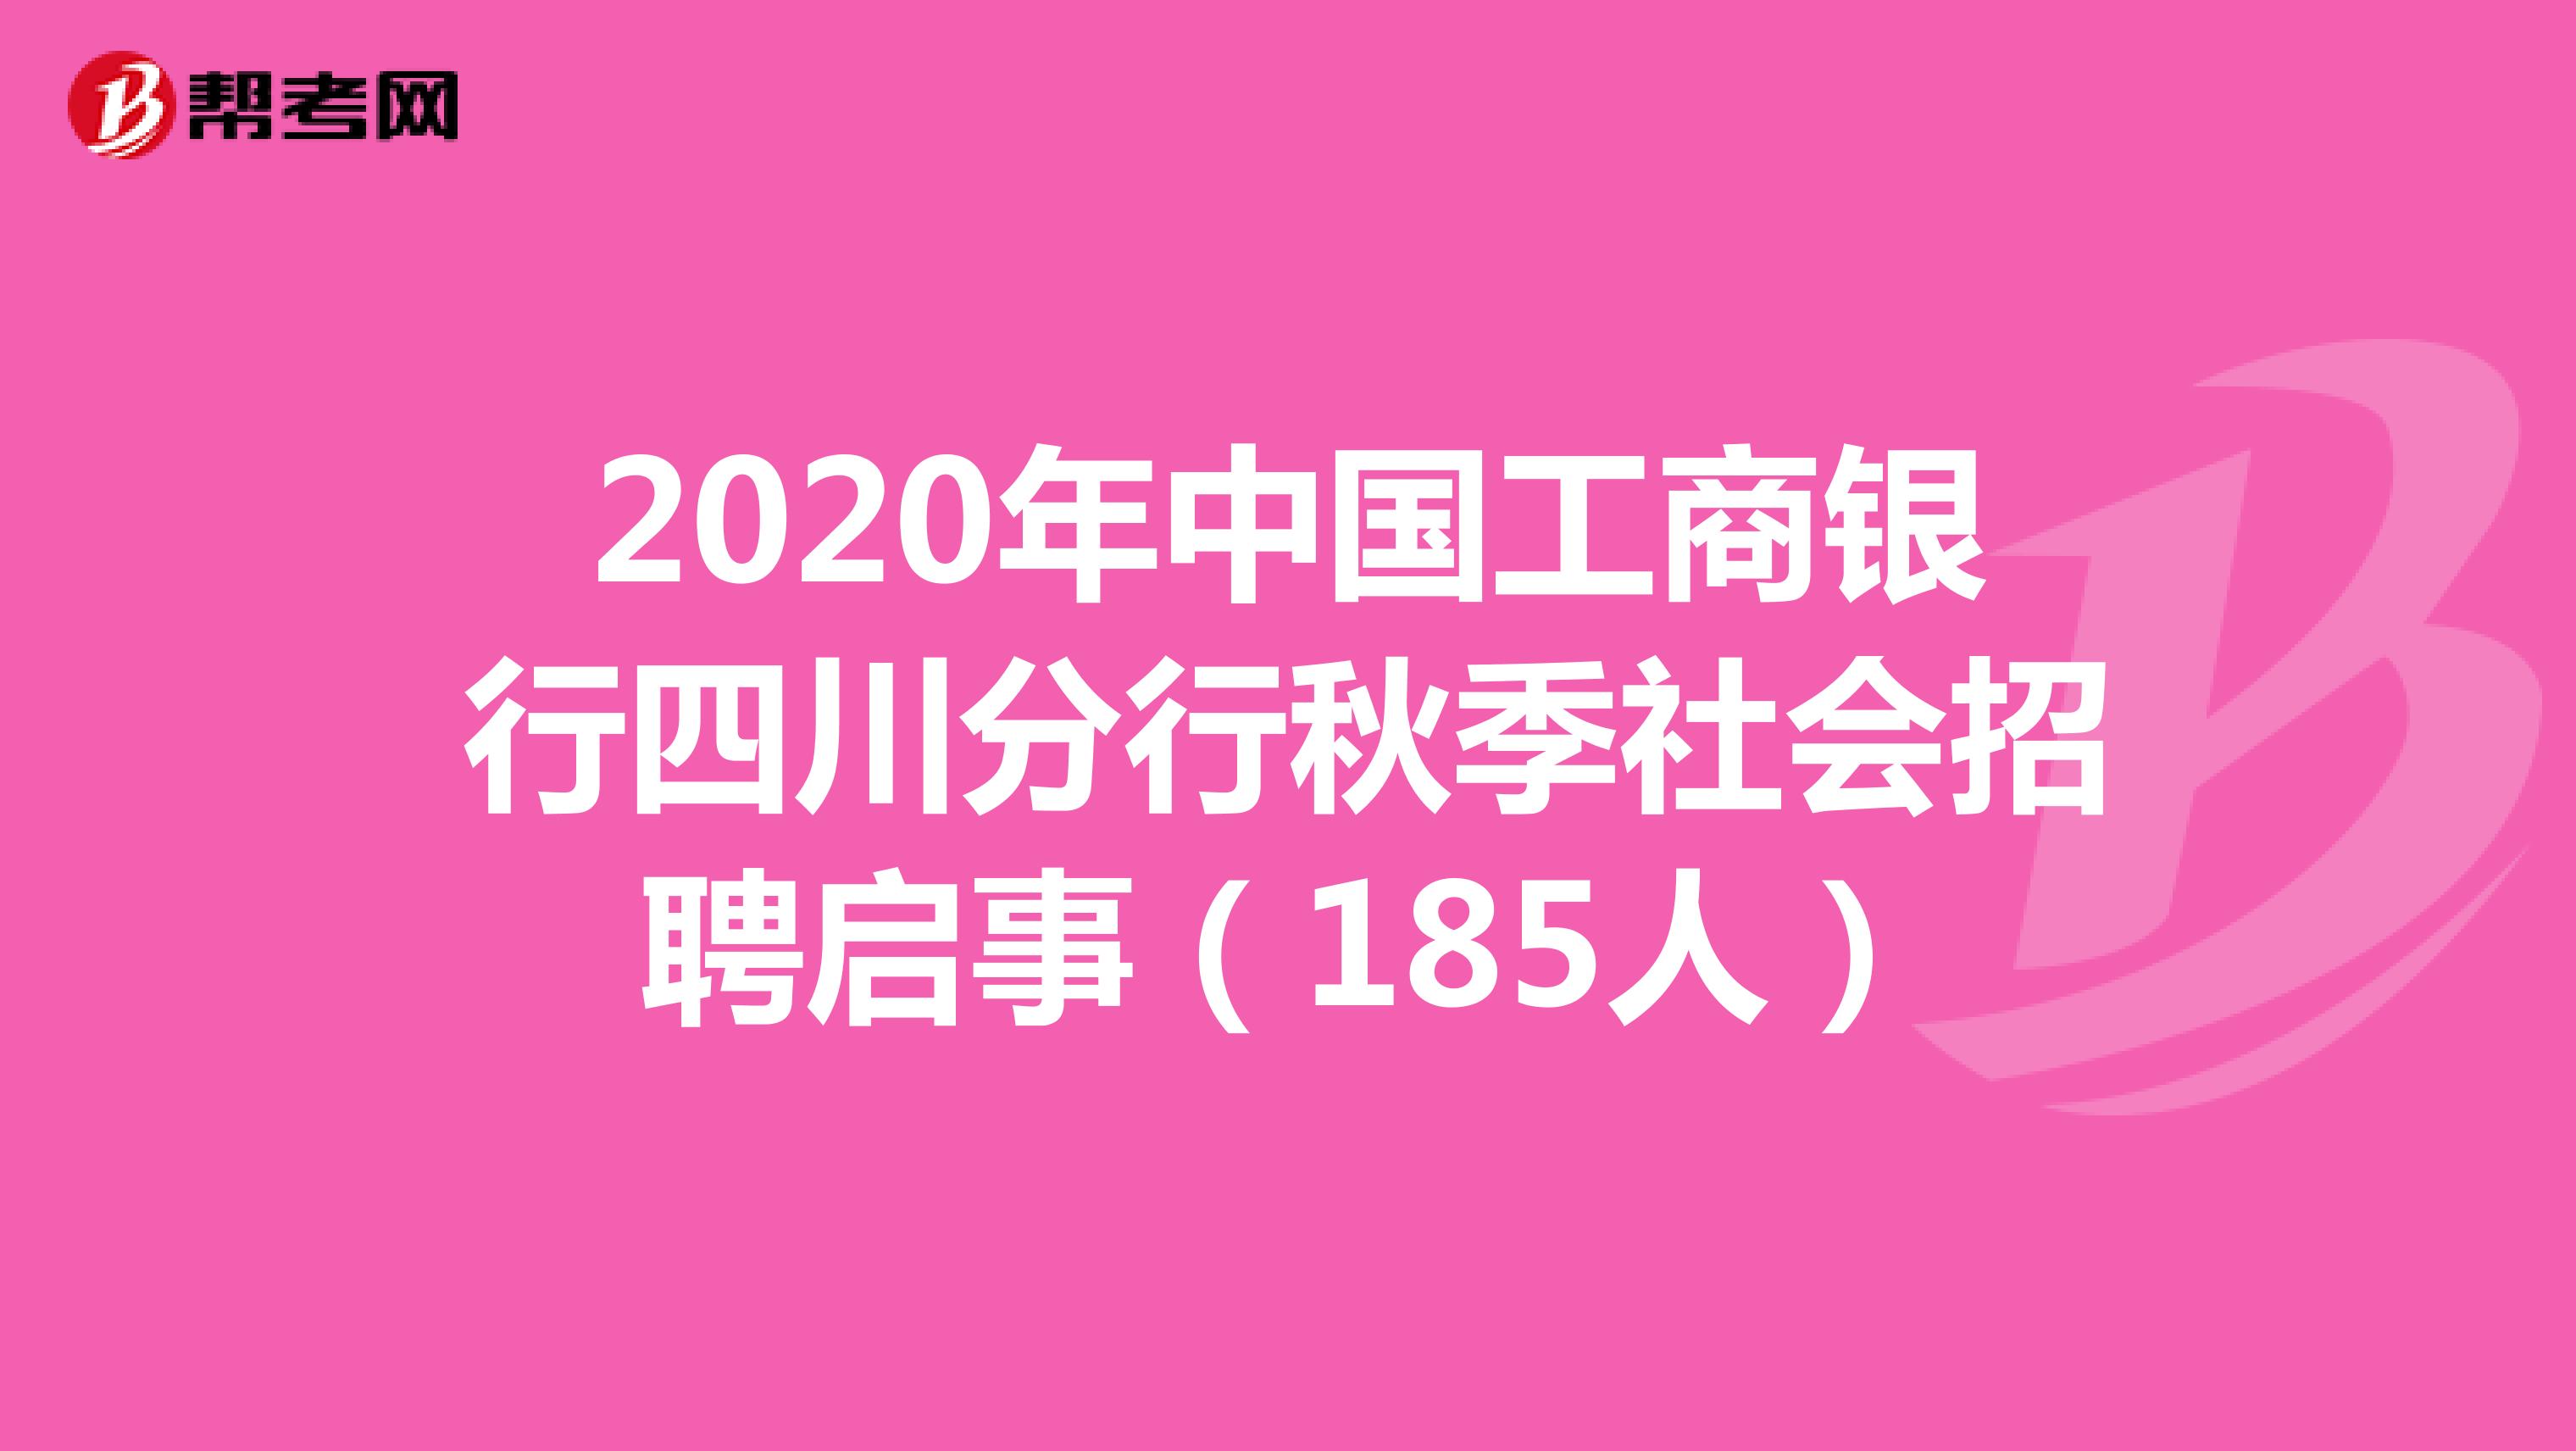 2020年中国工商银行四川分行秋季社会招聘启事（185人）